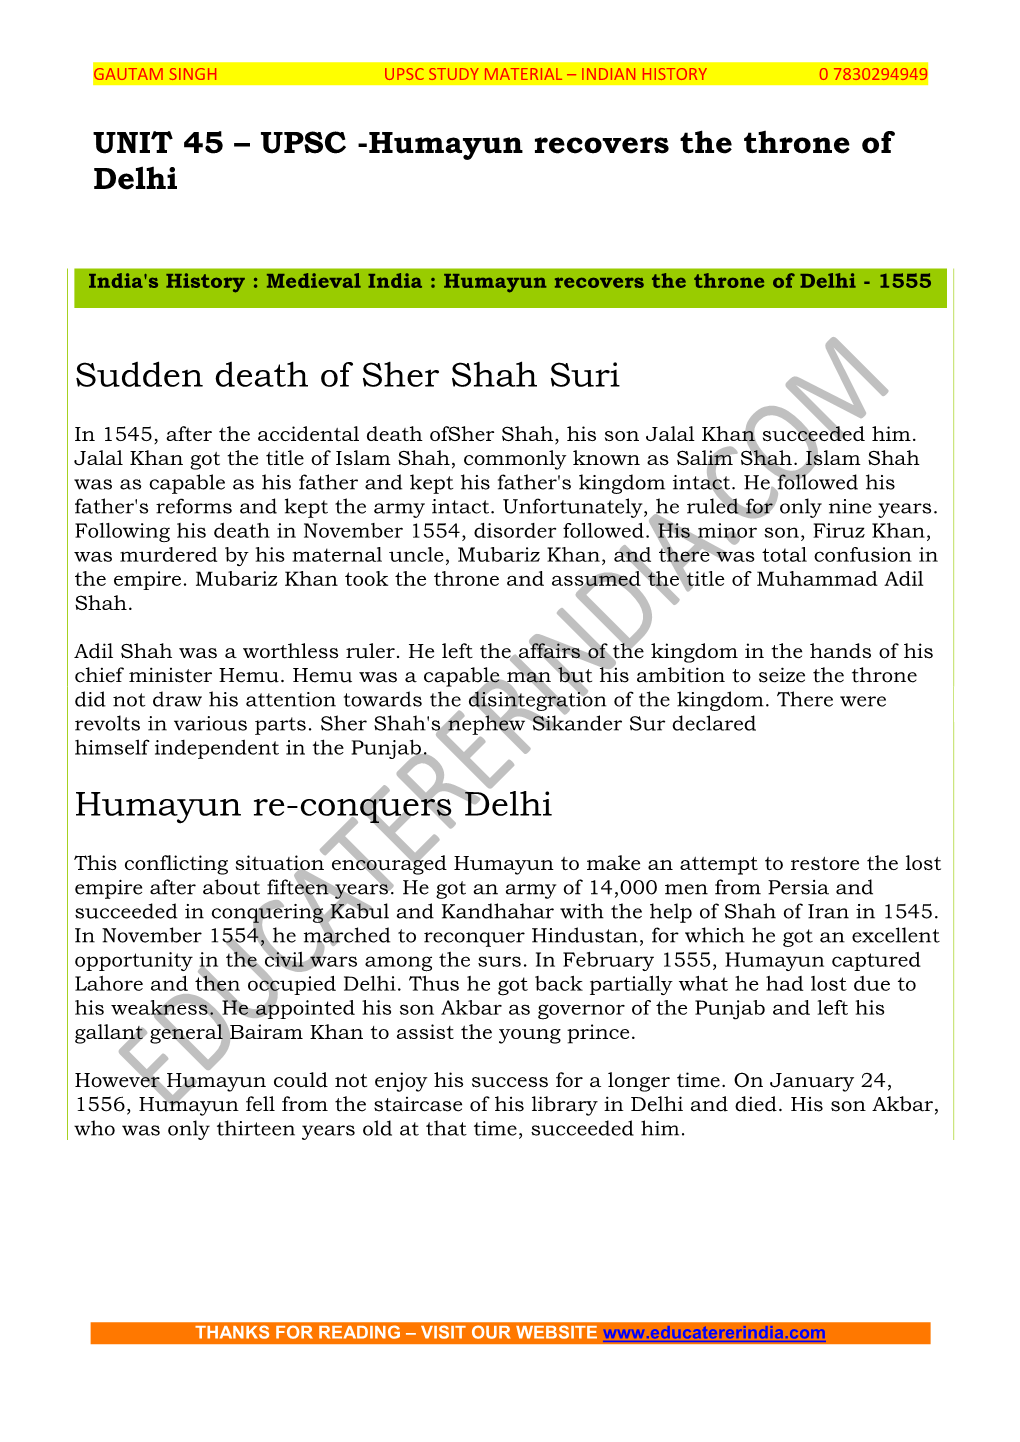 Sudden Death of Sher Shah Suri Humayun Re